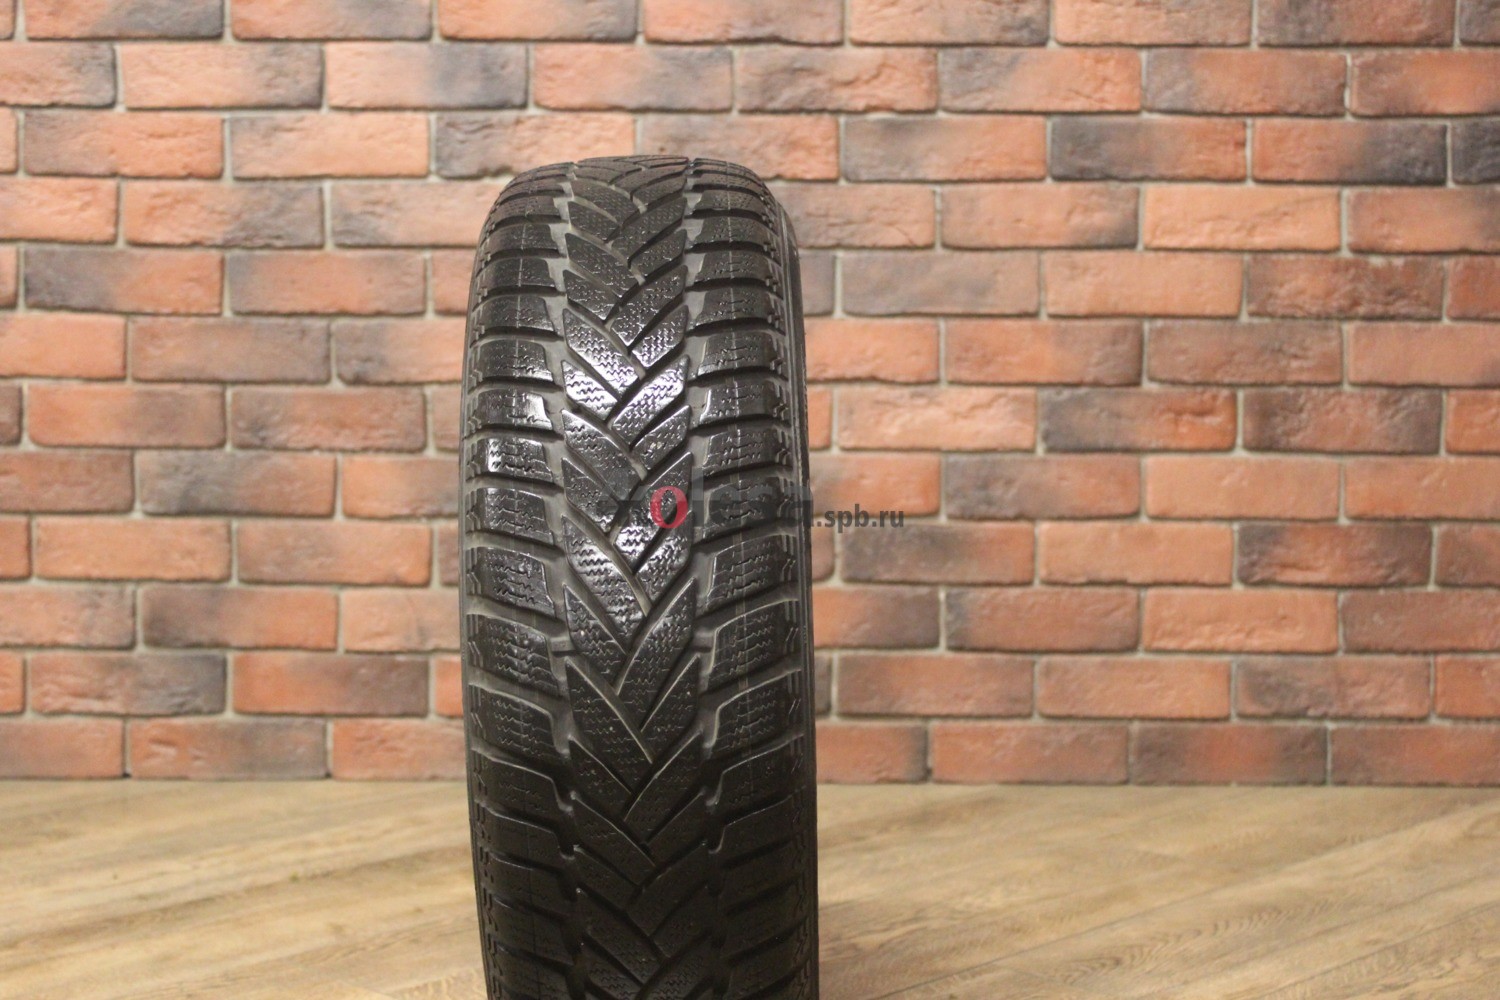 Зимние нешипованные шины R15 185/65 Dunlop SP Winter Sport M3 бу Лип. (6-7 мм.)